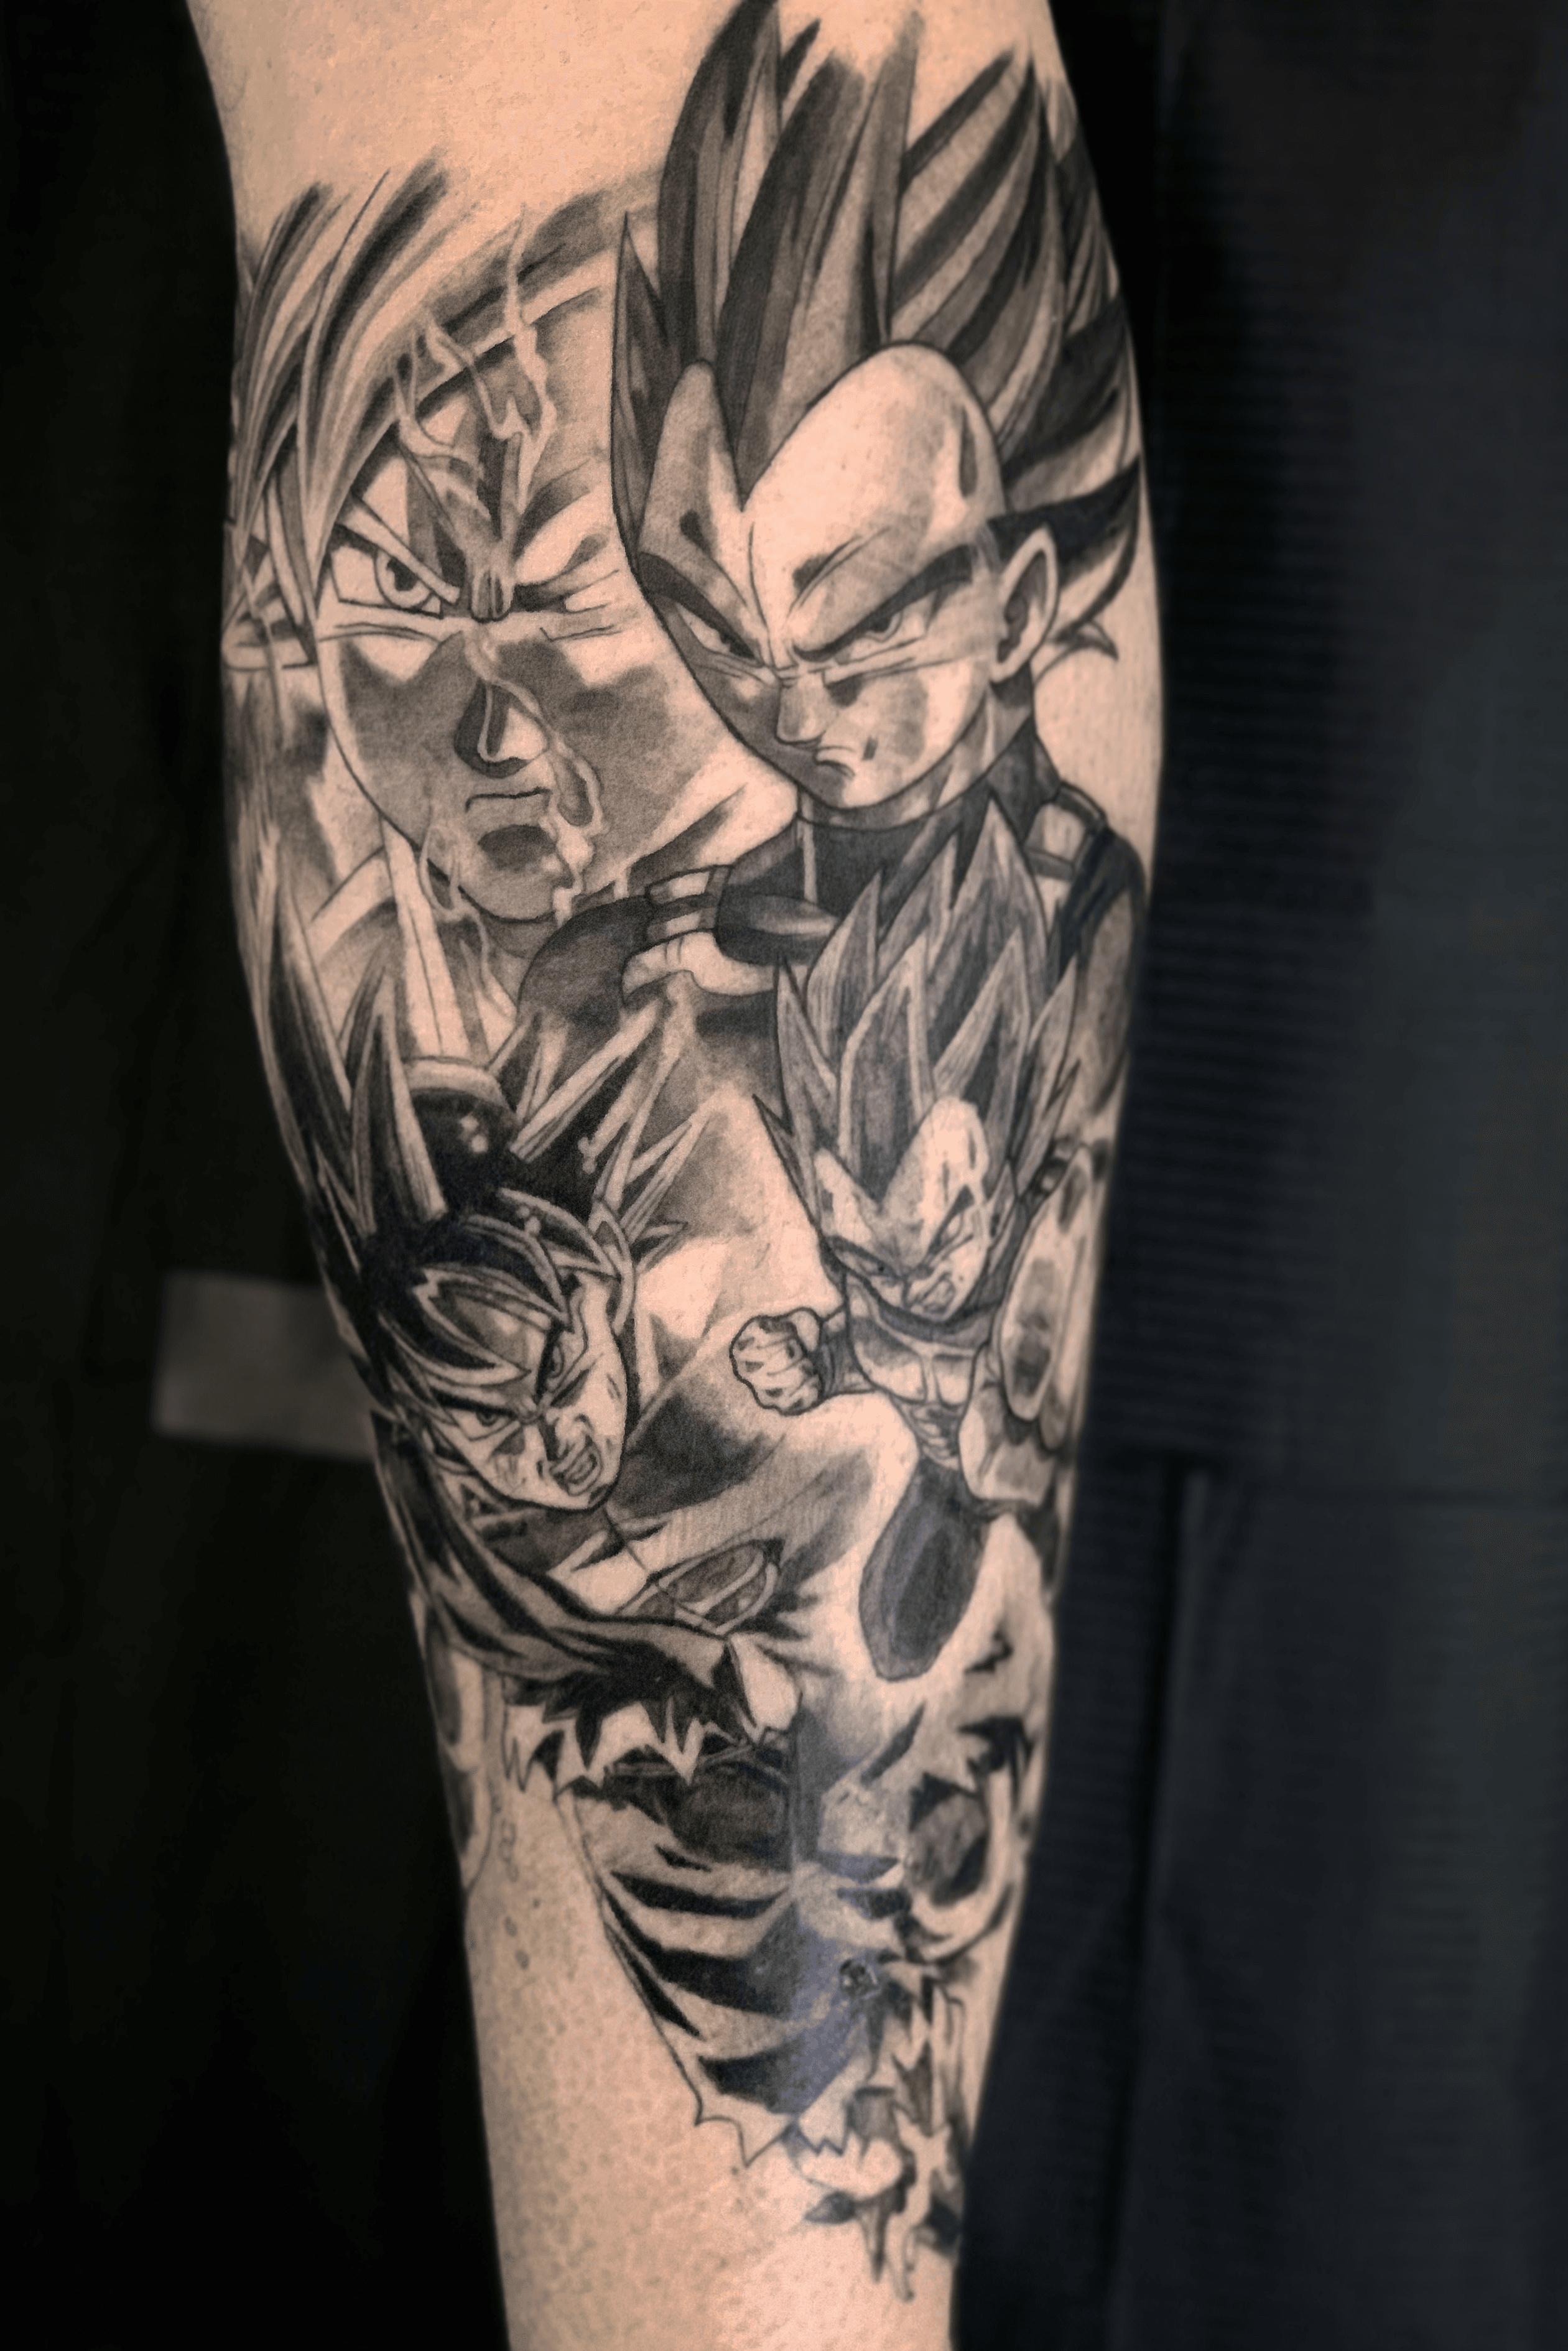 15 Cool Dragon Ball Z Tattoos Only Fans Will Get  Body Art Guru